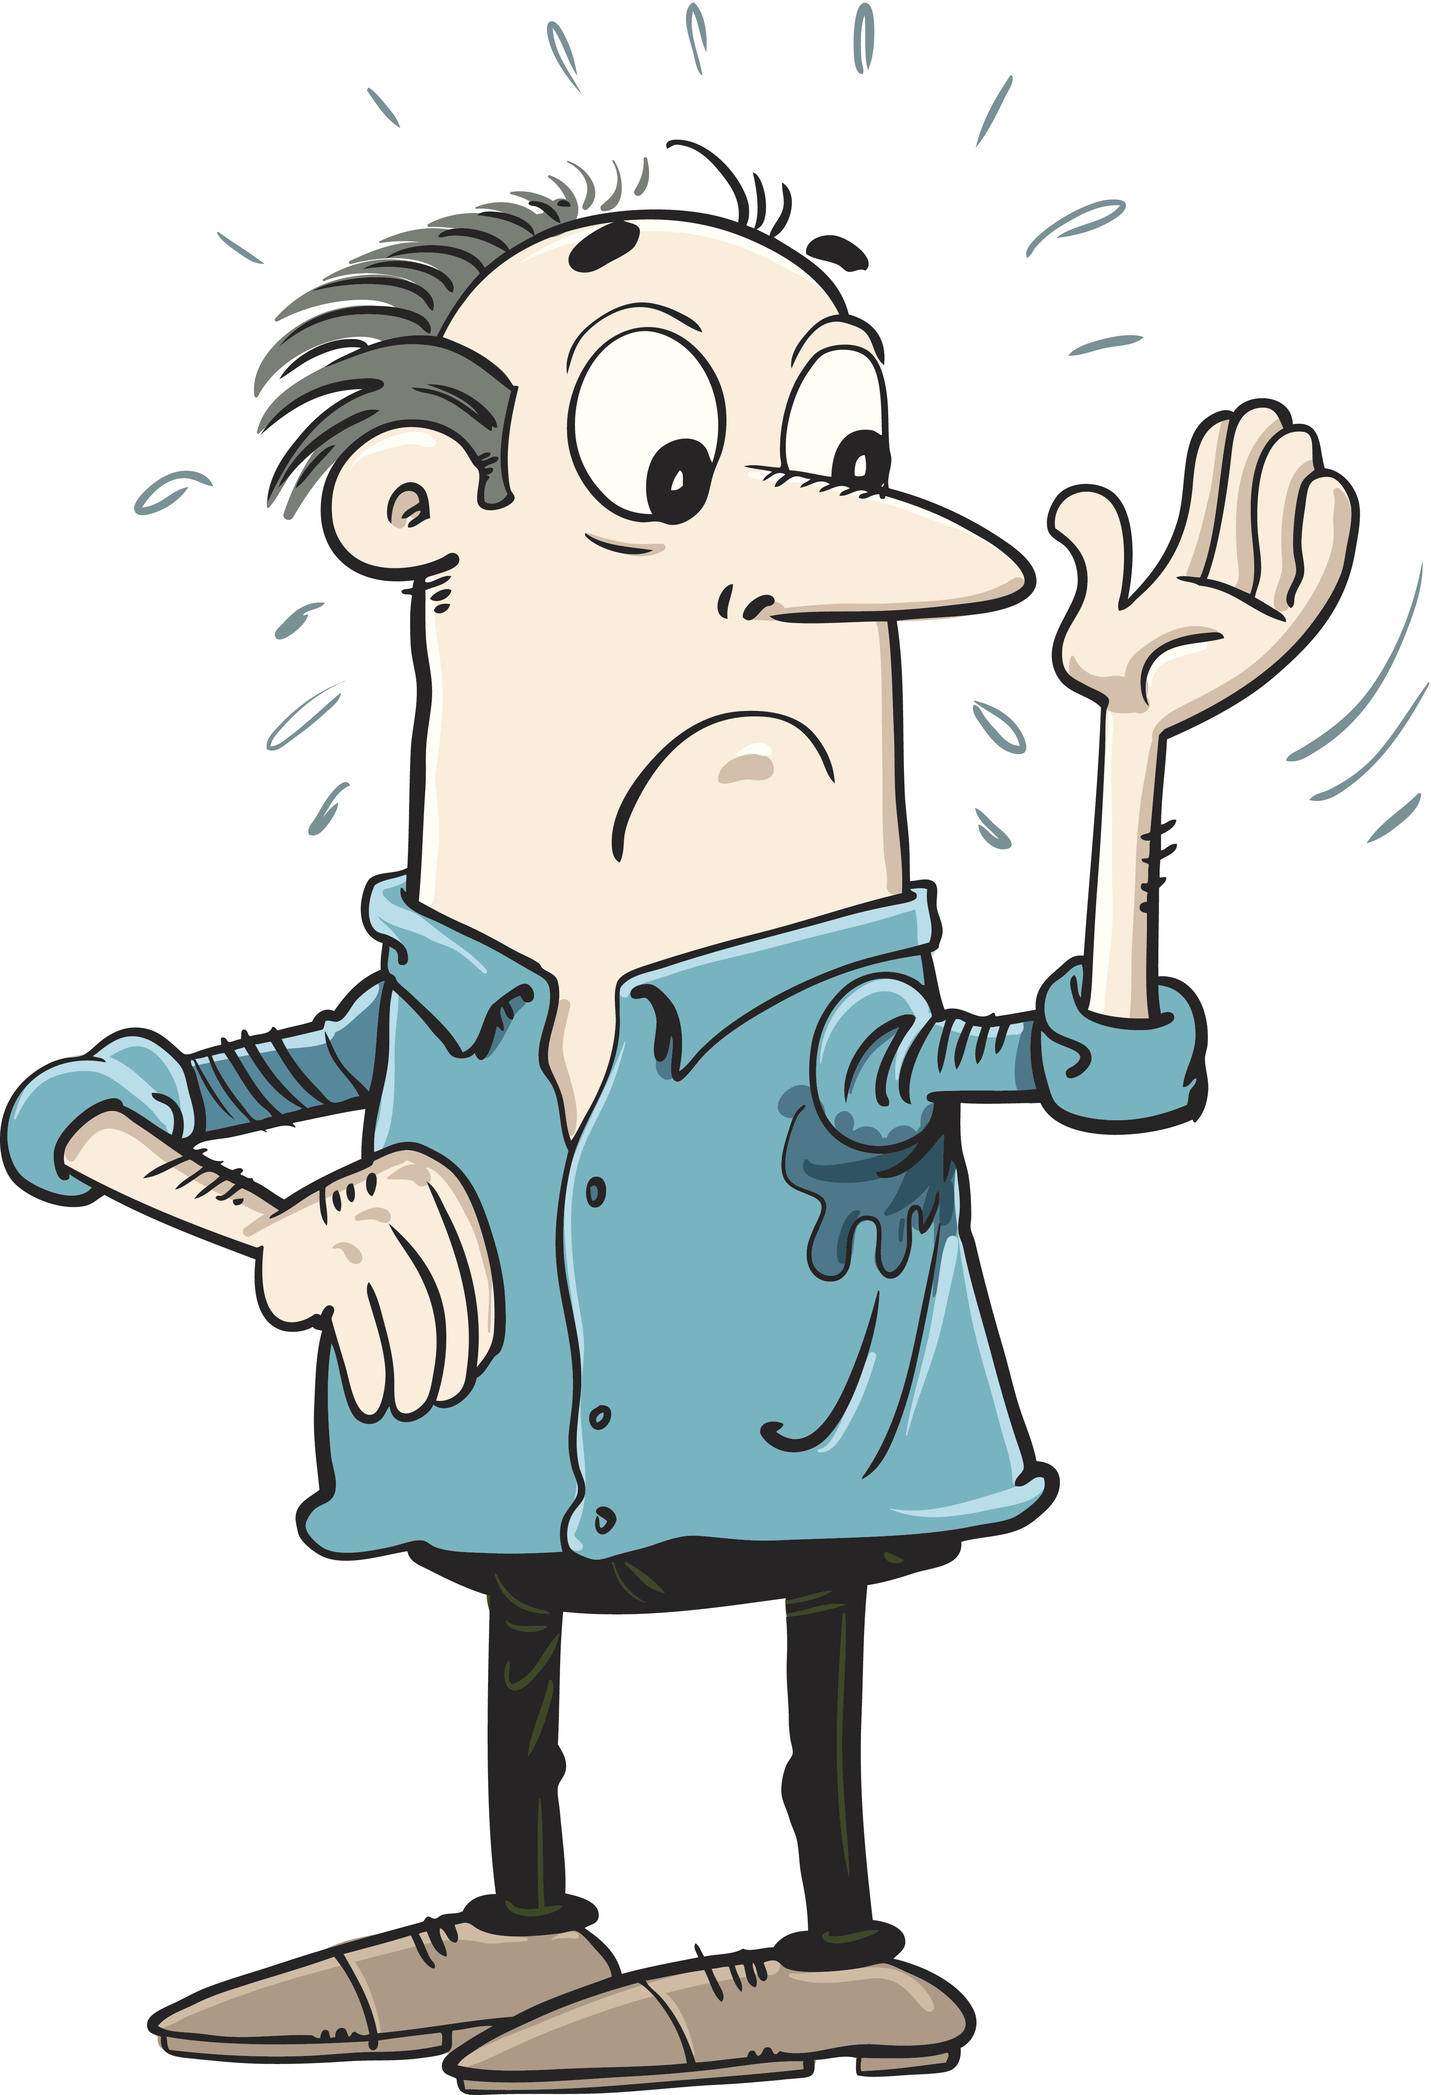 An illustration of a sweaty man (Thinkstock/PA)